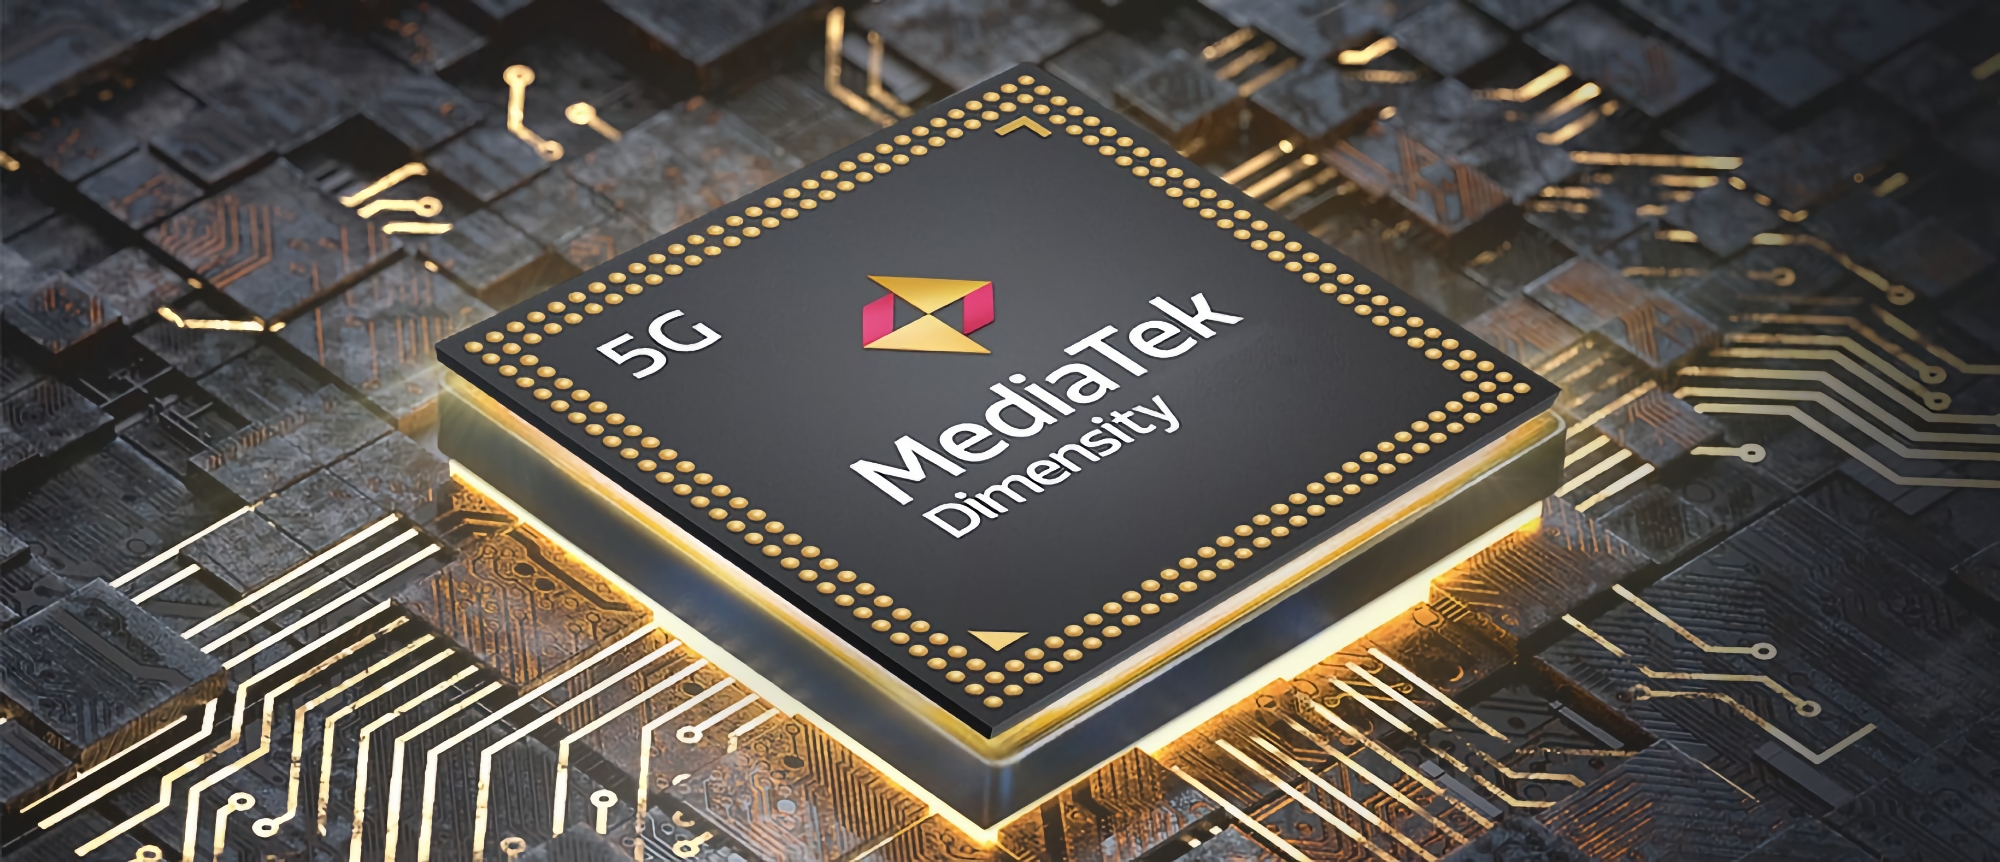 Insider: MediaTek wird im März einen 5-Nanometer-Dimensity-8100-Prozessor vorstellen